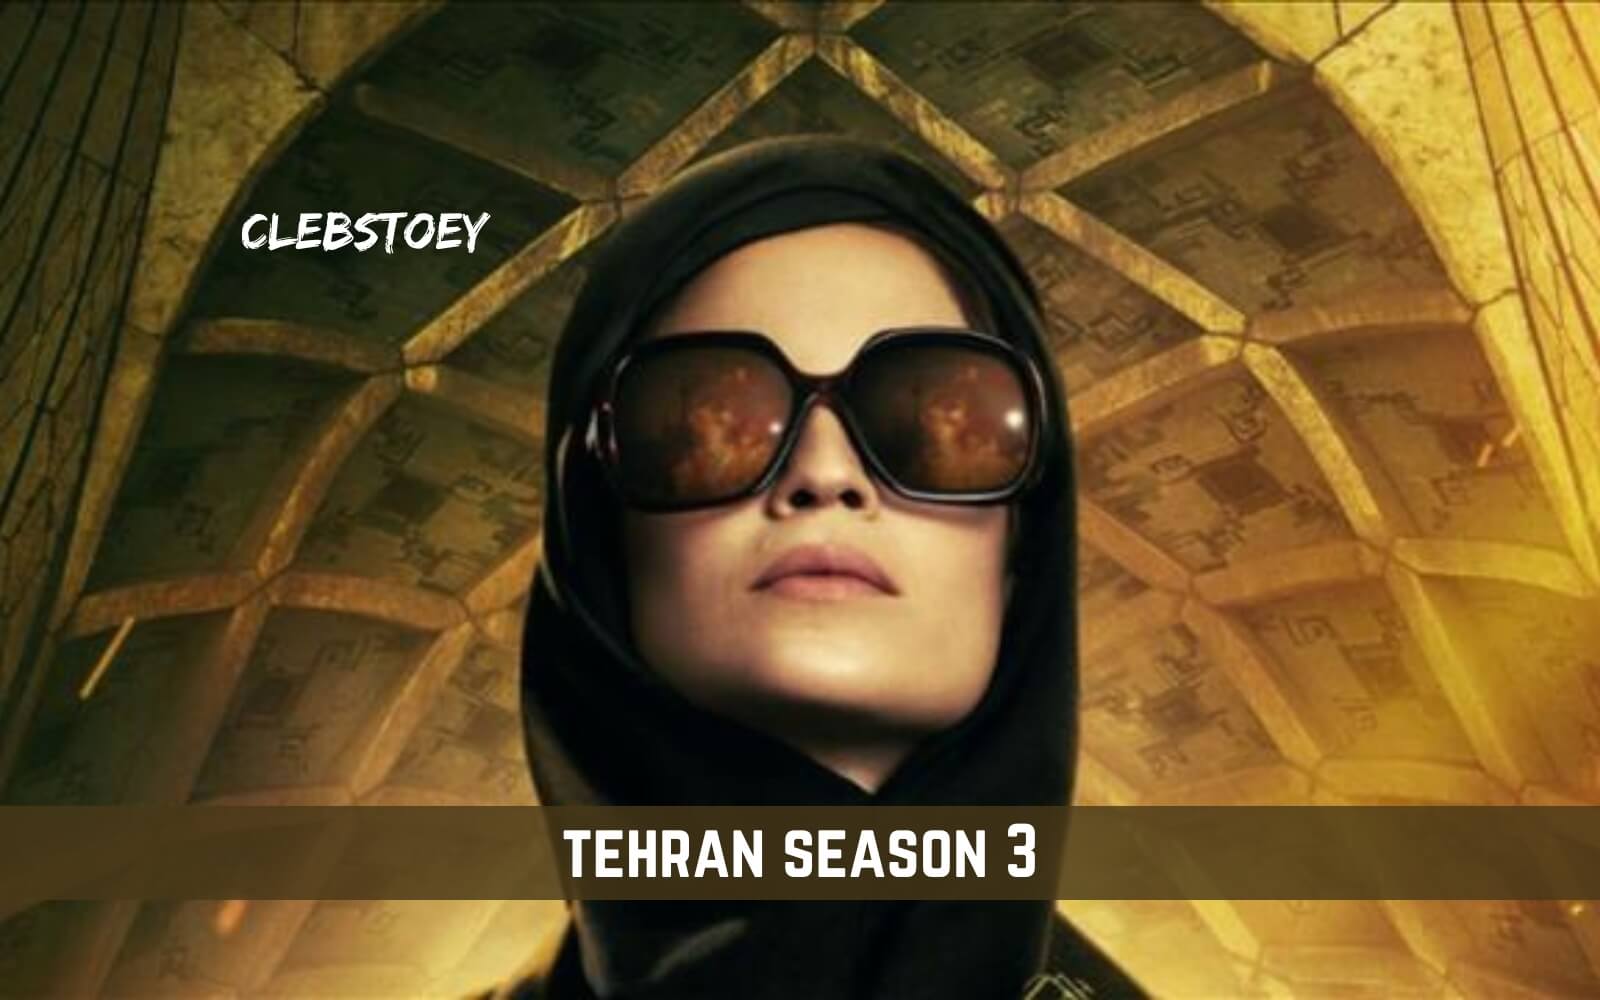 tehran season 3